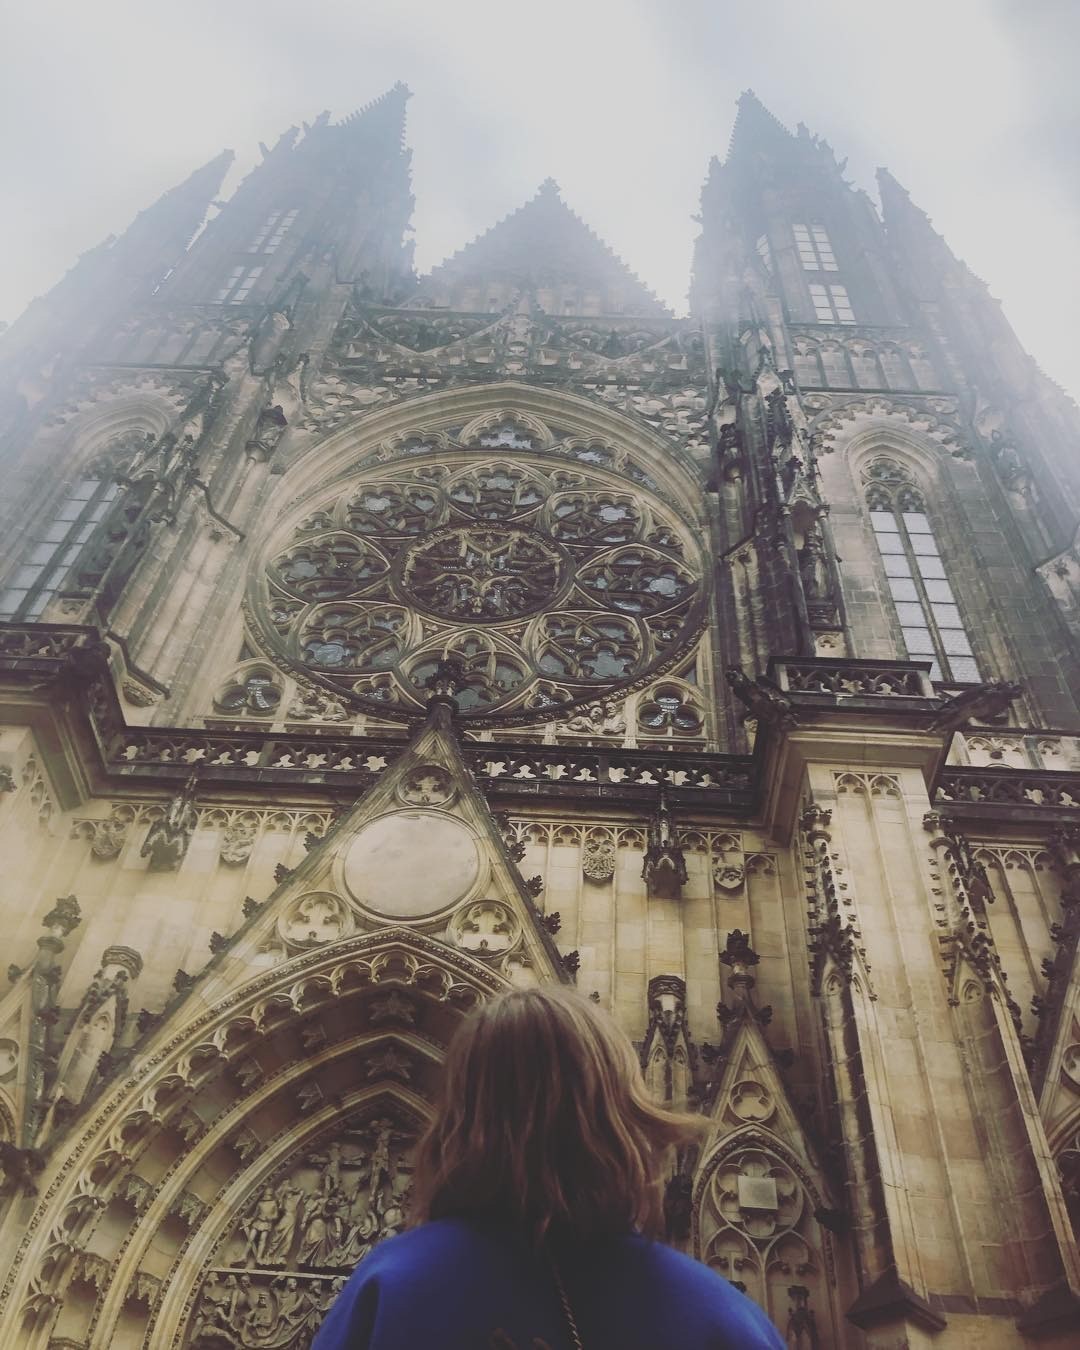 Такую параллель он провел под фото, на котором журналистка стоит на фоне Собора Святого Вита в Чехии (Прага), построенного в готическом стиле.

«На фото — опаснейший человек! И не верьте...